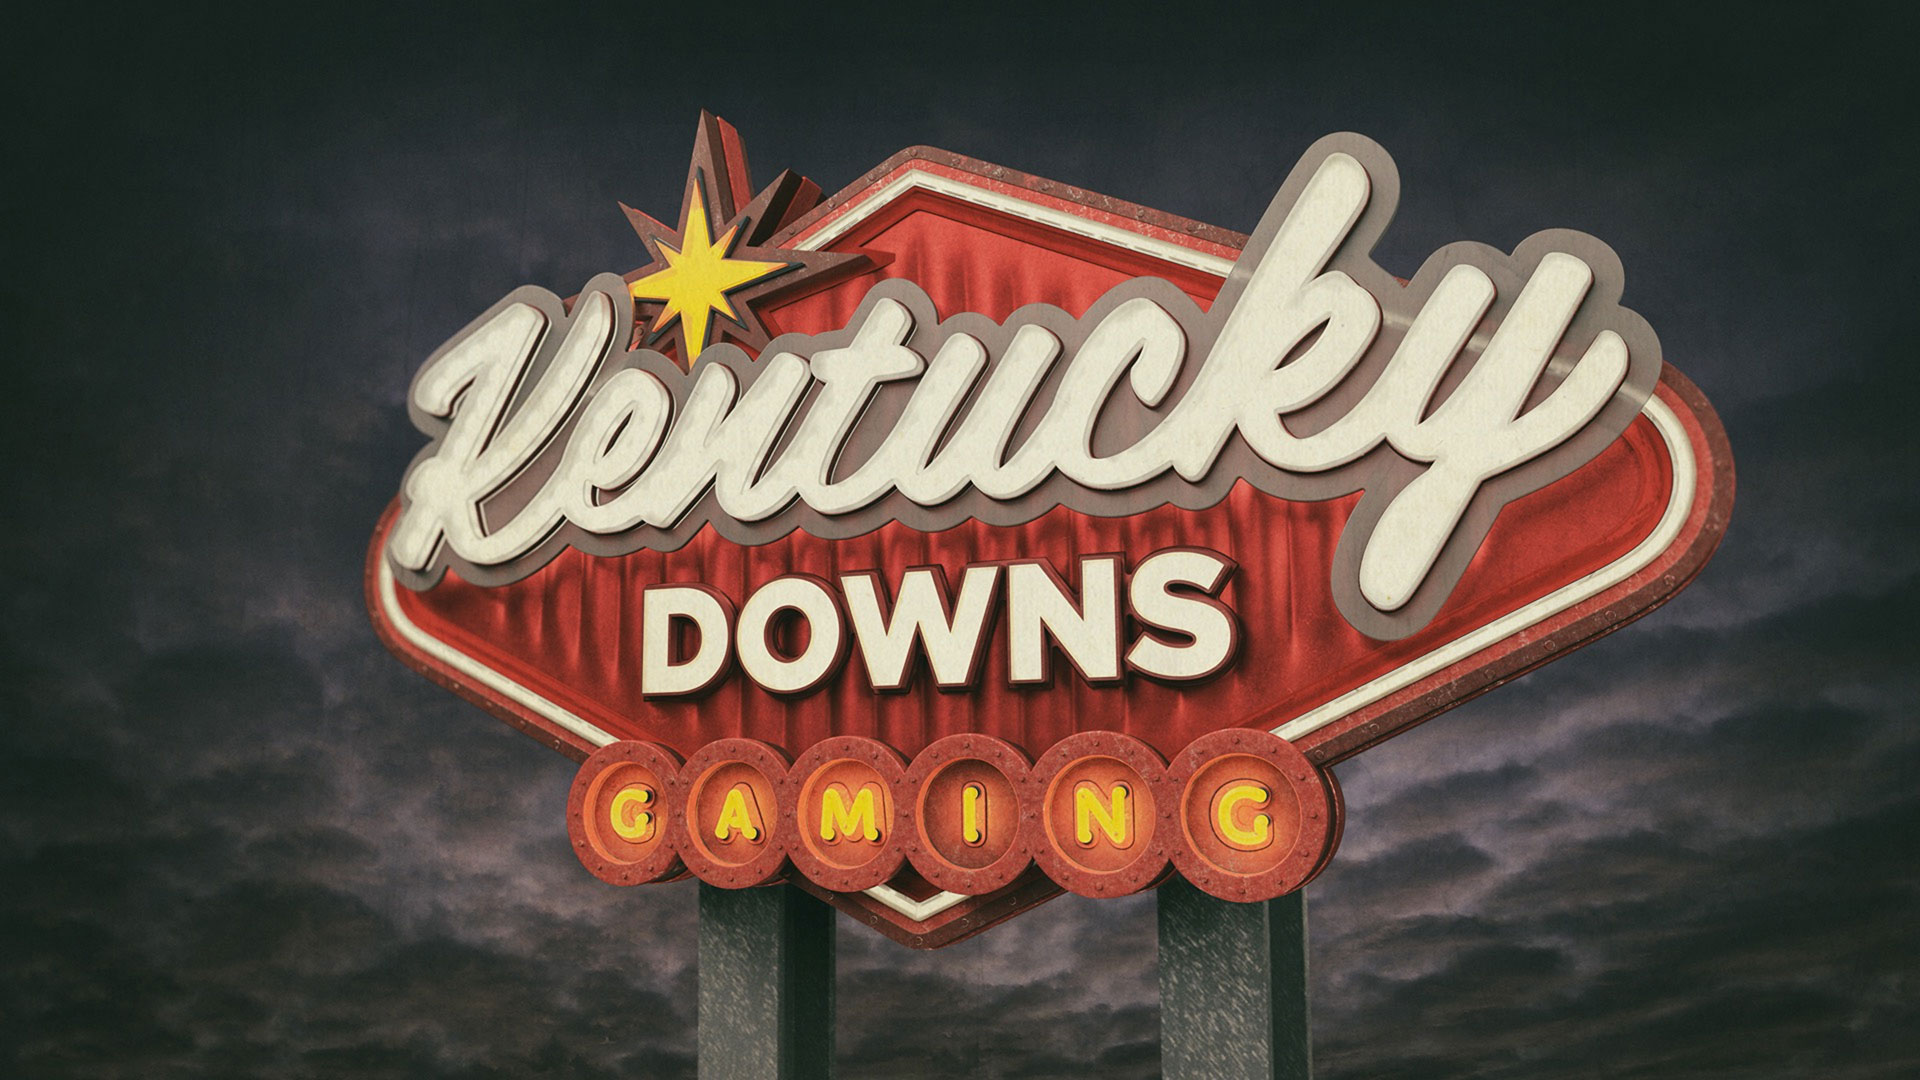 Kentucky Downs sign design.